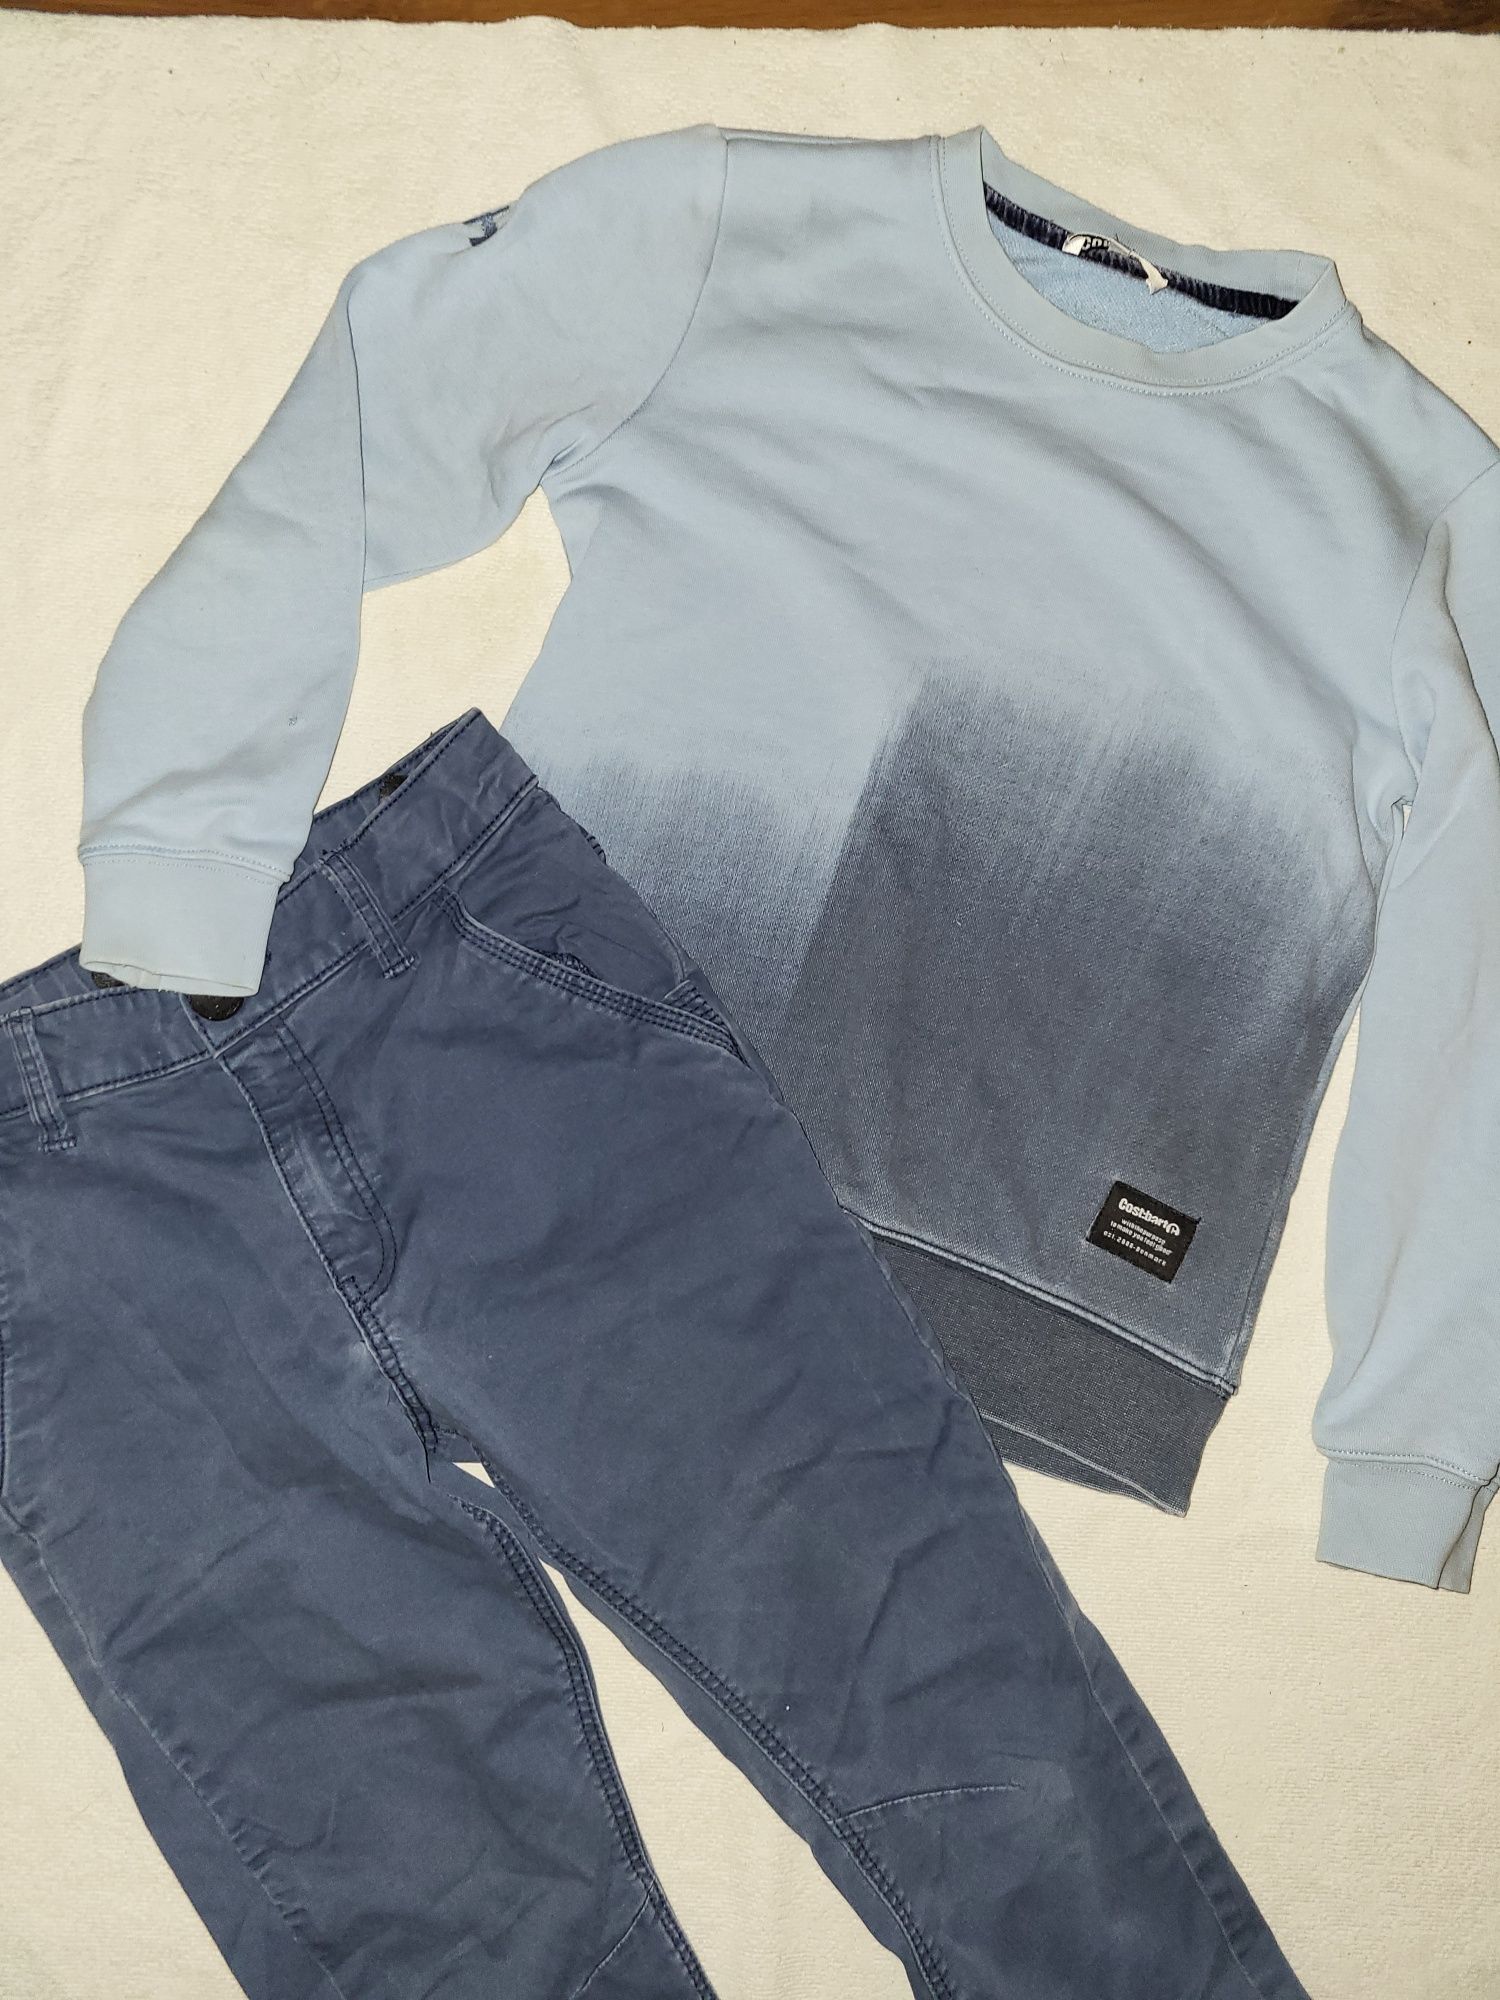 Bluza tie dye plus spodnie H&M jeansowe ciemno niebieskie